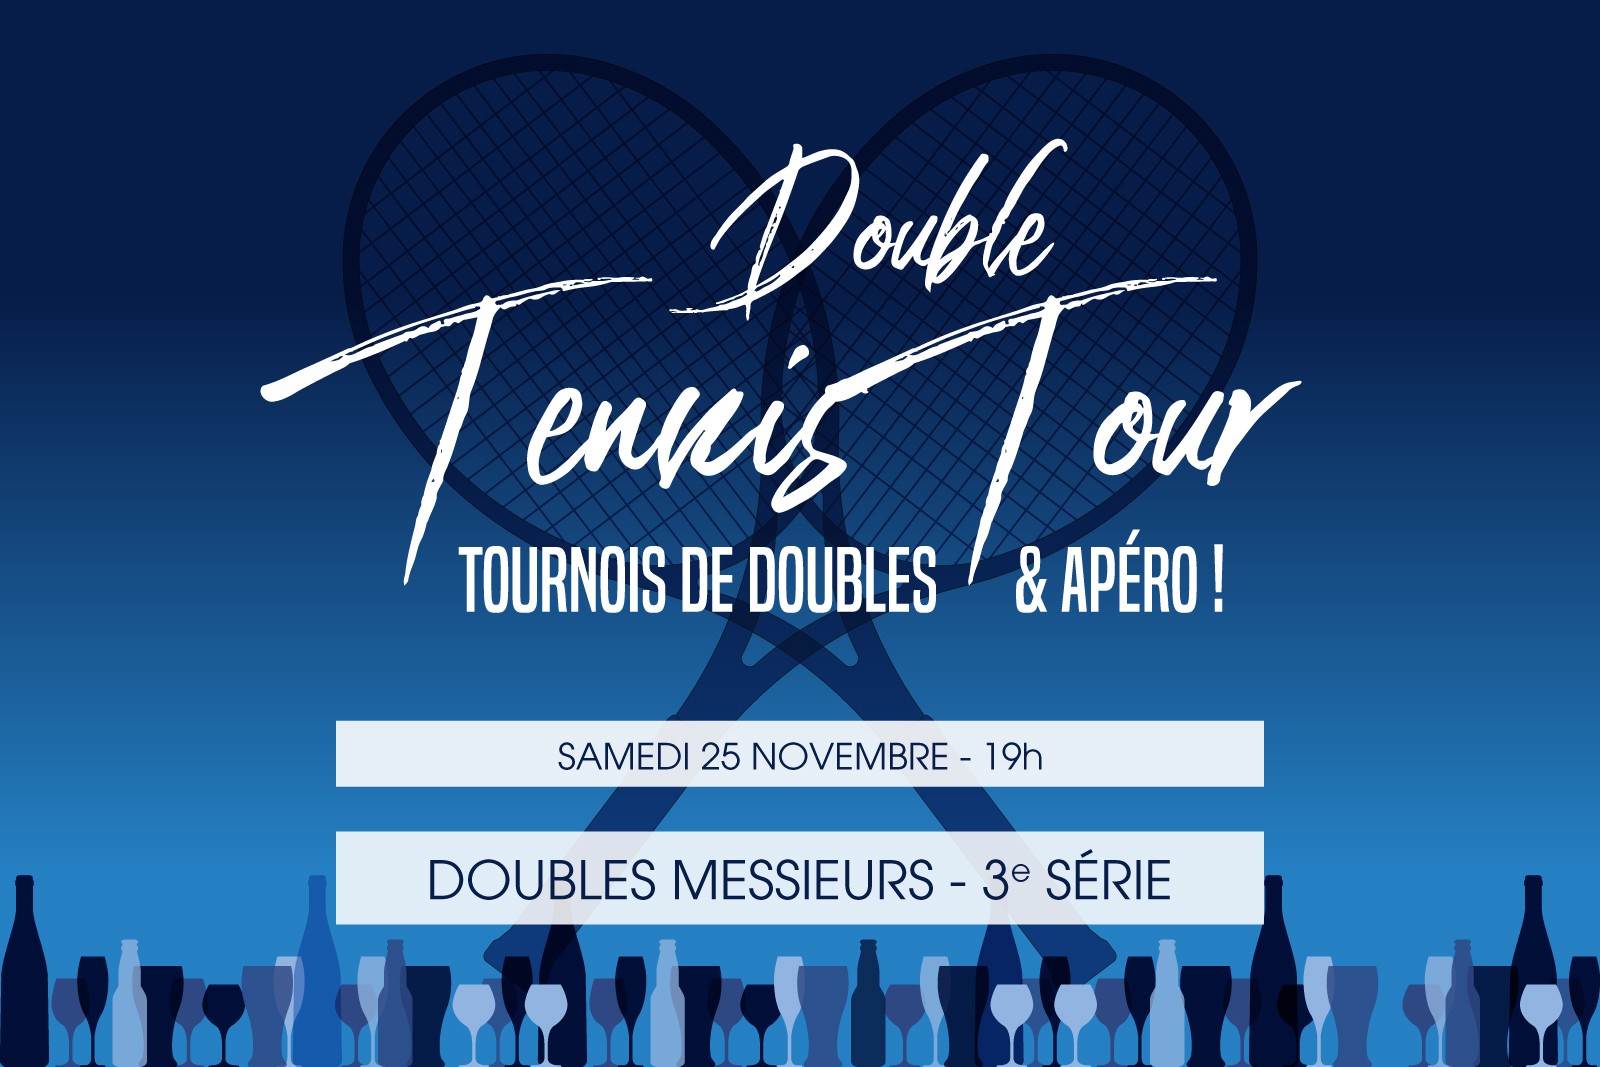 DOUBLE TENNIS TOUR - Messieurs 3ème série